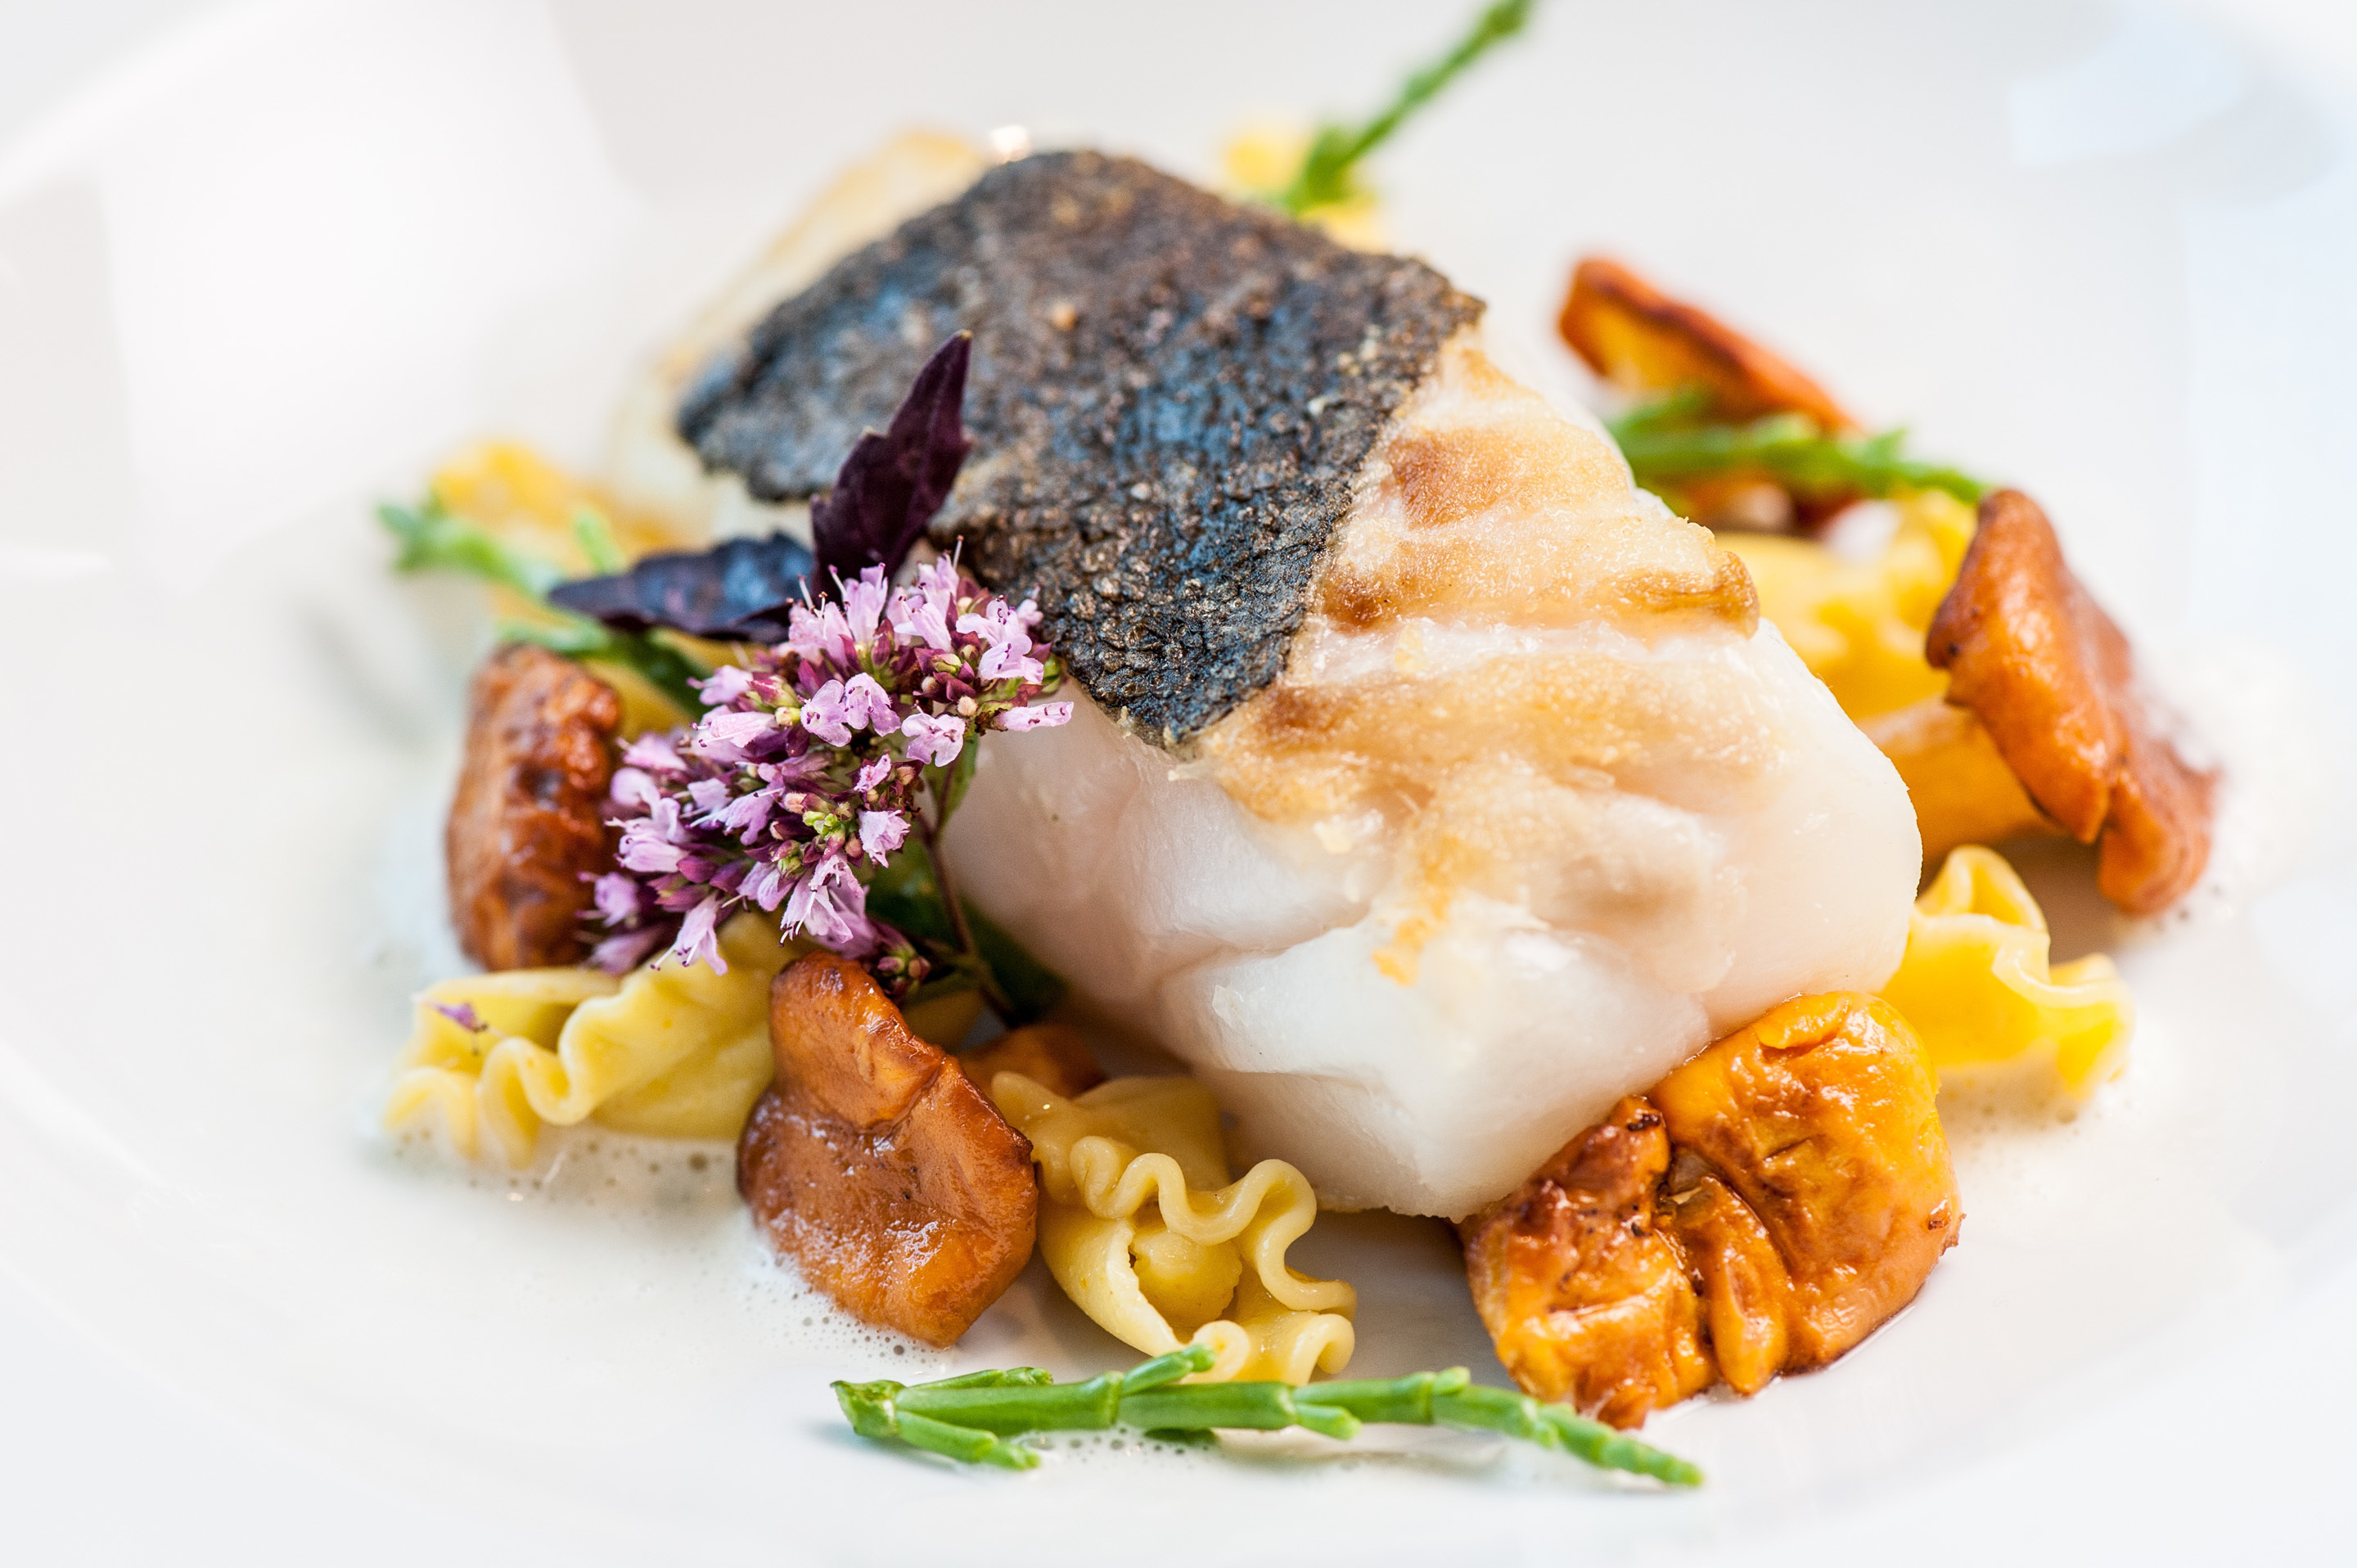 Erleben Sie kulinarisch mit allen Sinnen 'Norddeutsches' im Fischers Fritz Restaurant im 4 Sterne Hotel Ringhotel Birke in Kiel